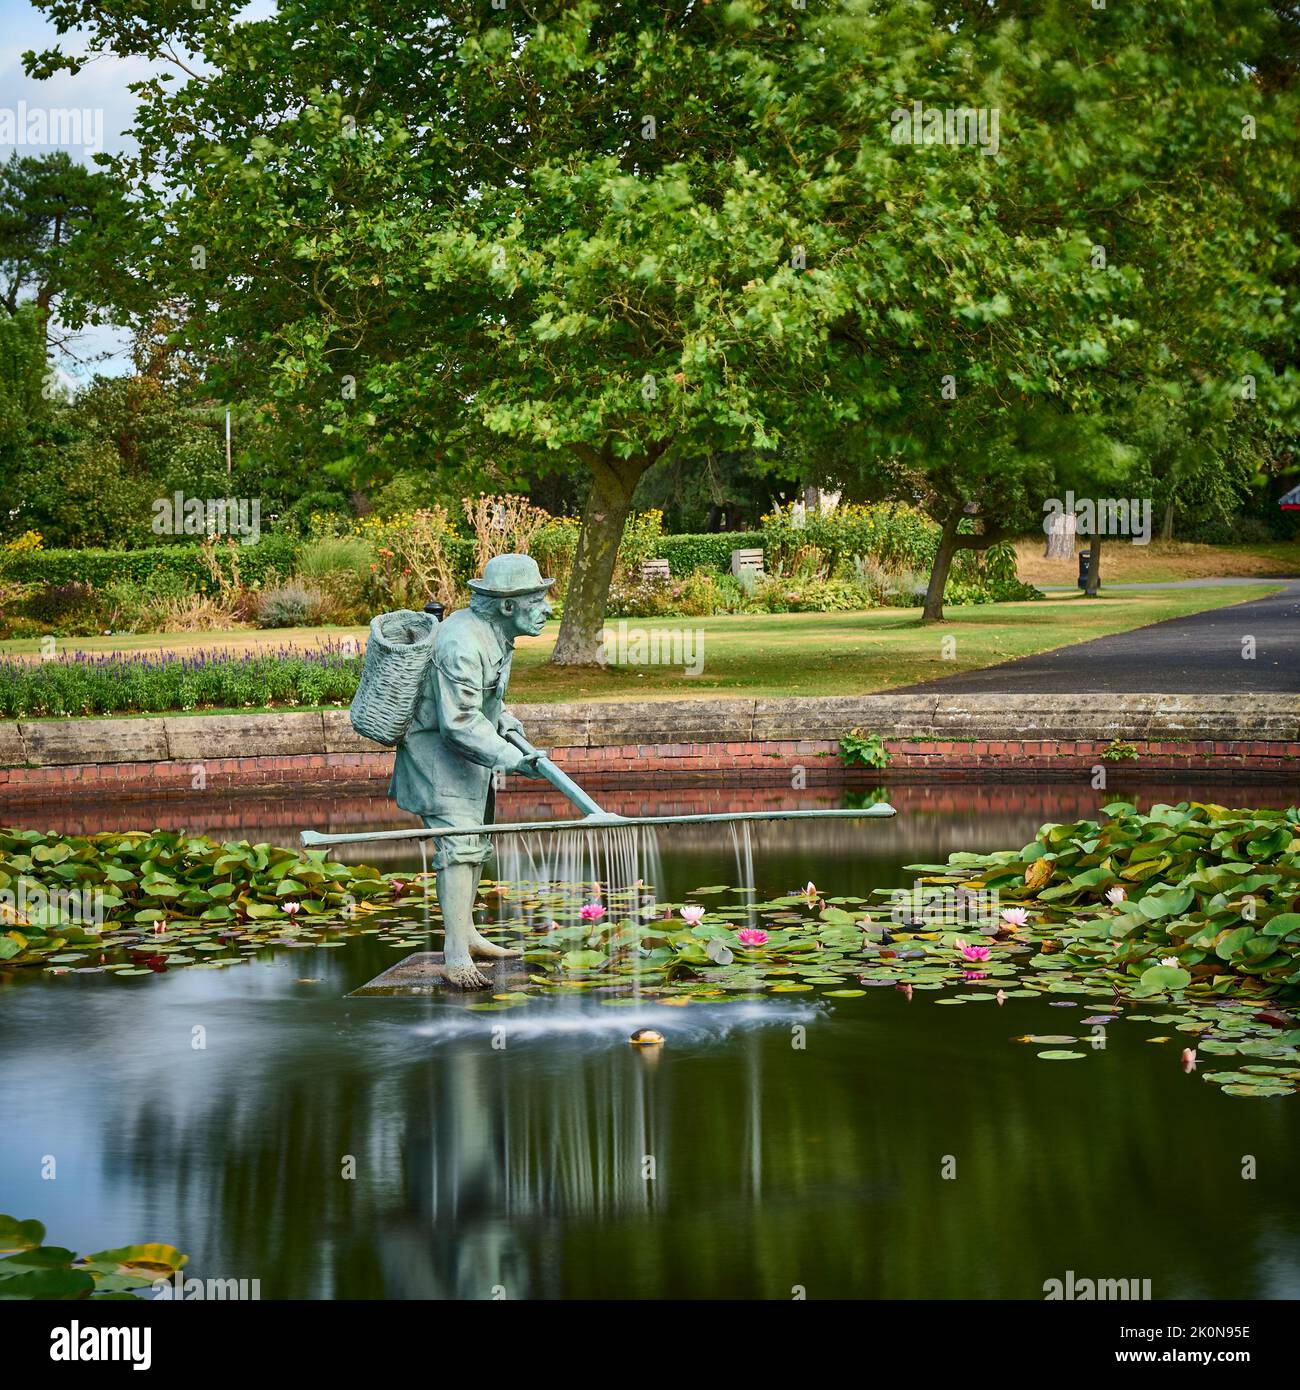 La estatua del camarón de Lytham por Colin Spofforth en Lowter Gardens, Lytham Foto de stock